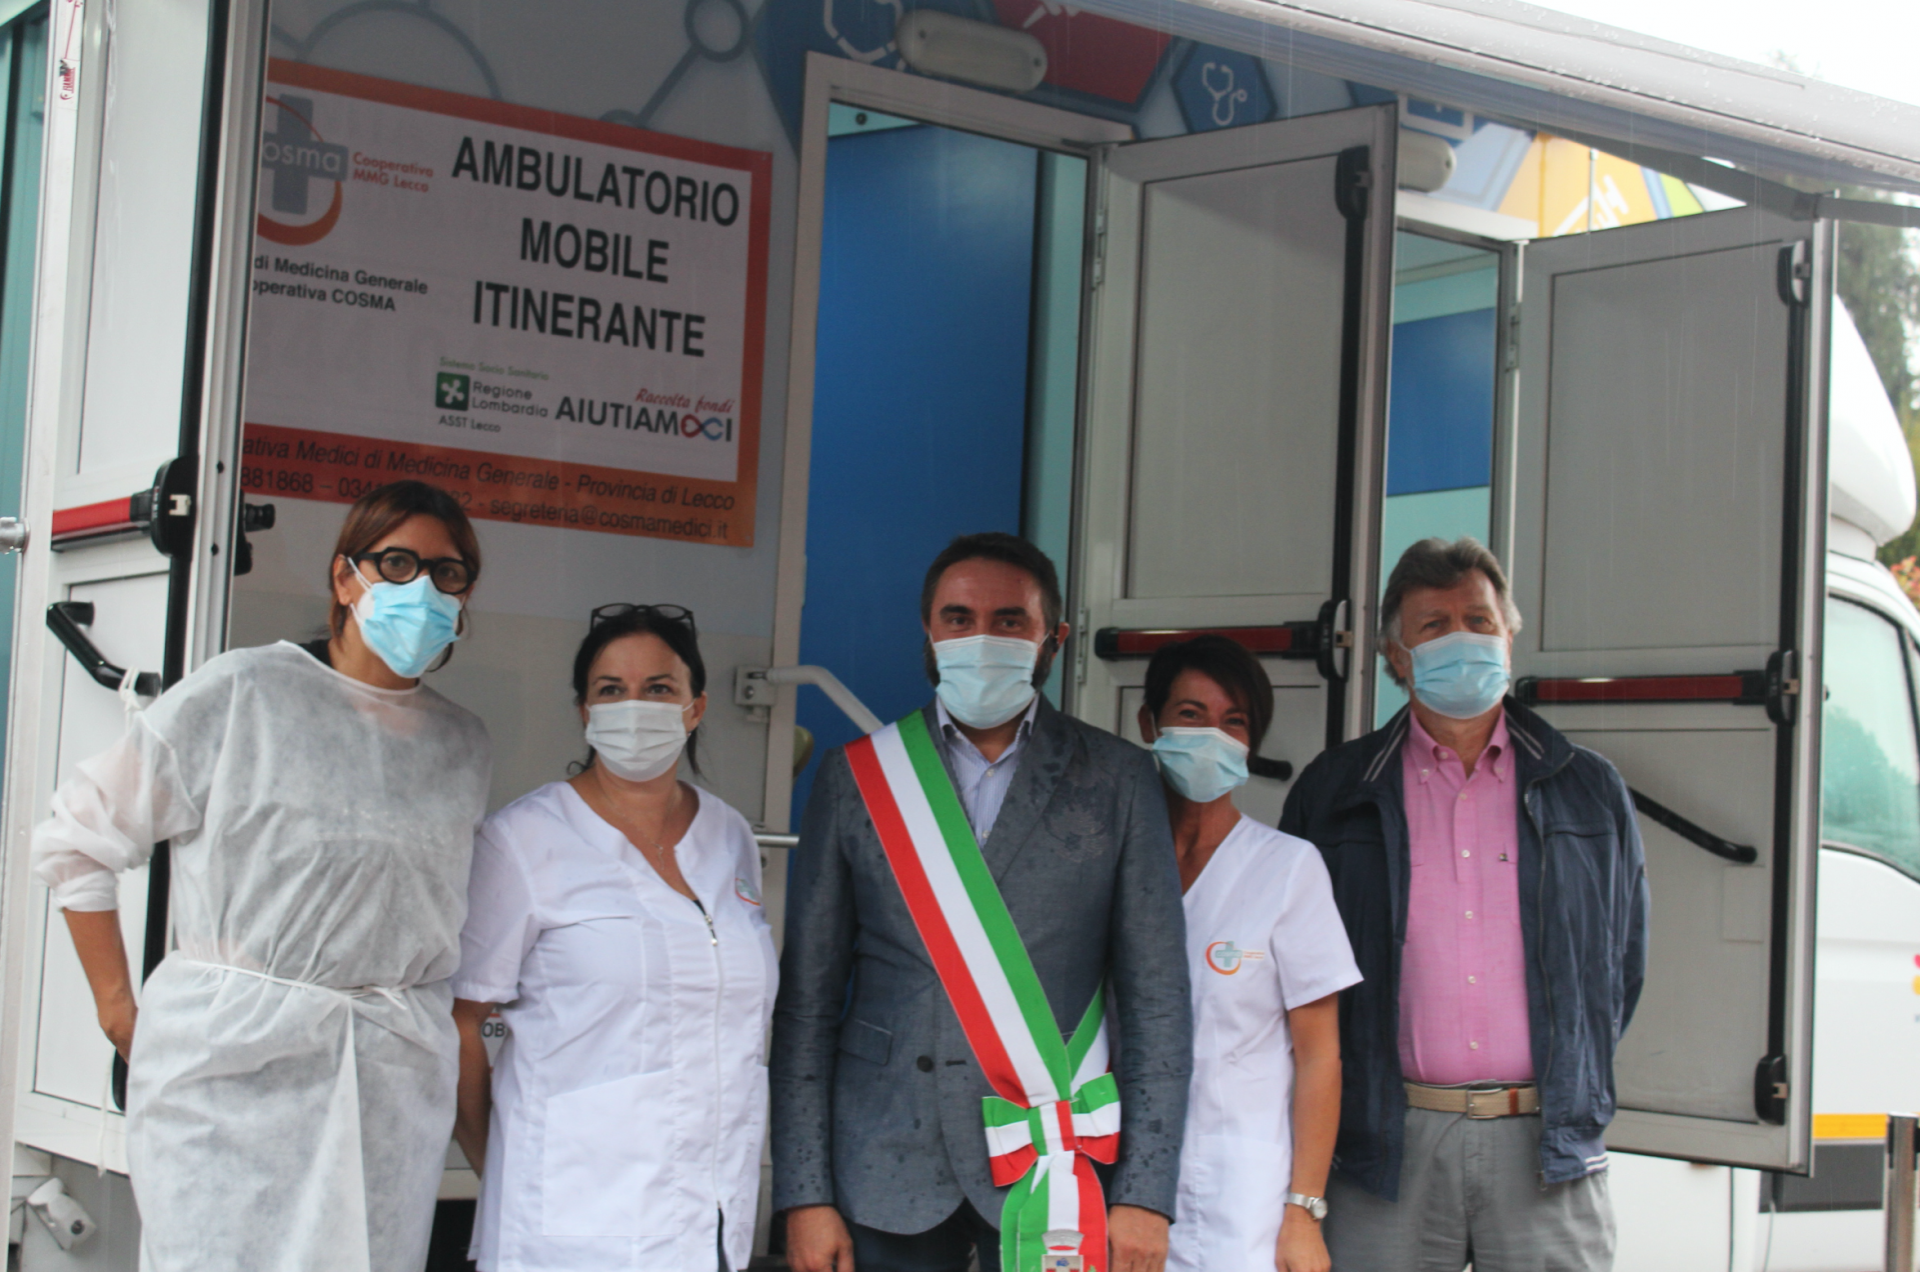 Inaugurazione ambulatorio mobile itinerante Olgiate Molgora, al centro il sindaco Giovanni Battista Berlocco con le infermiere